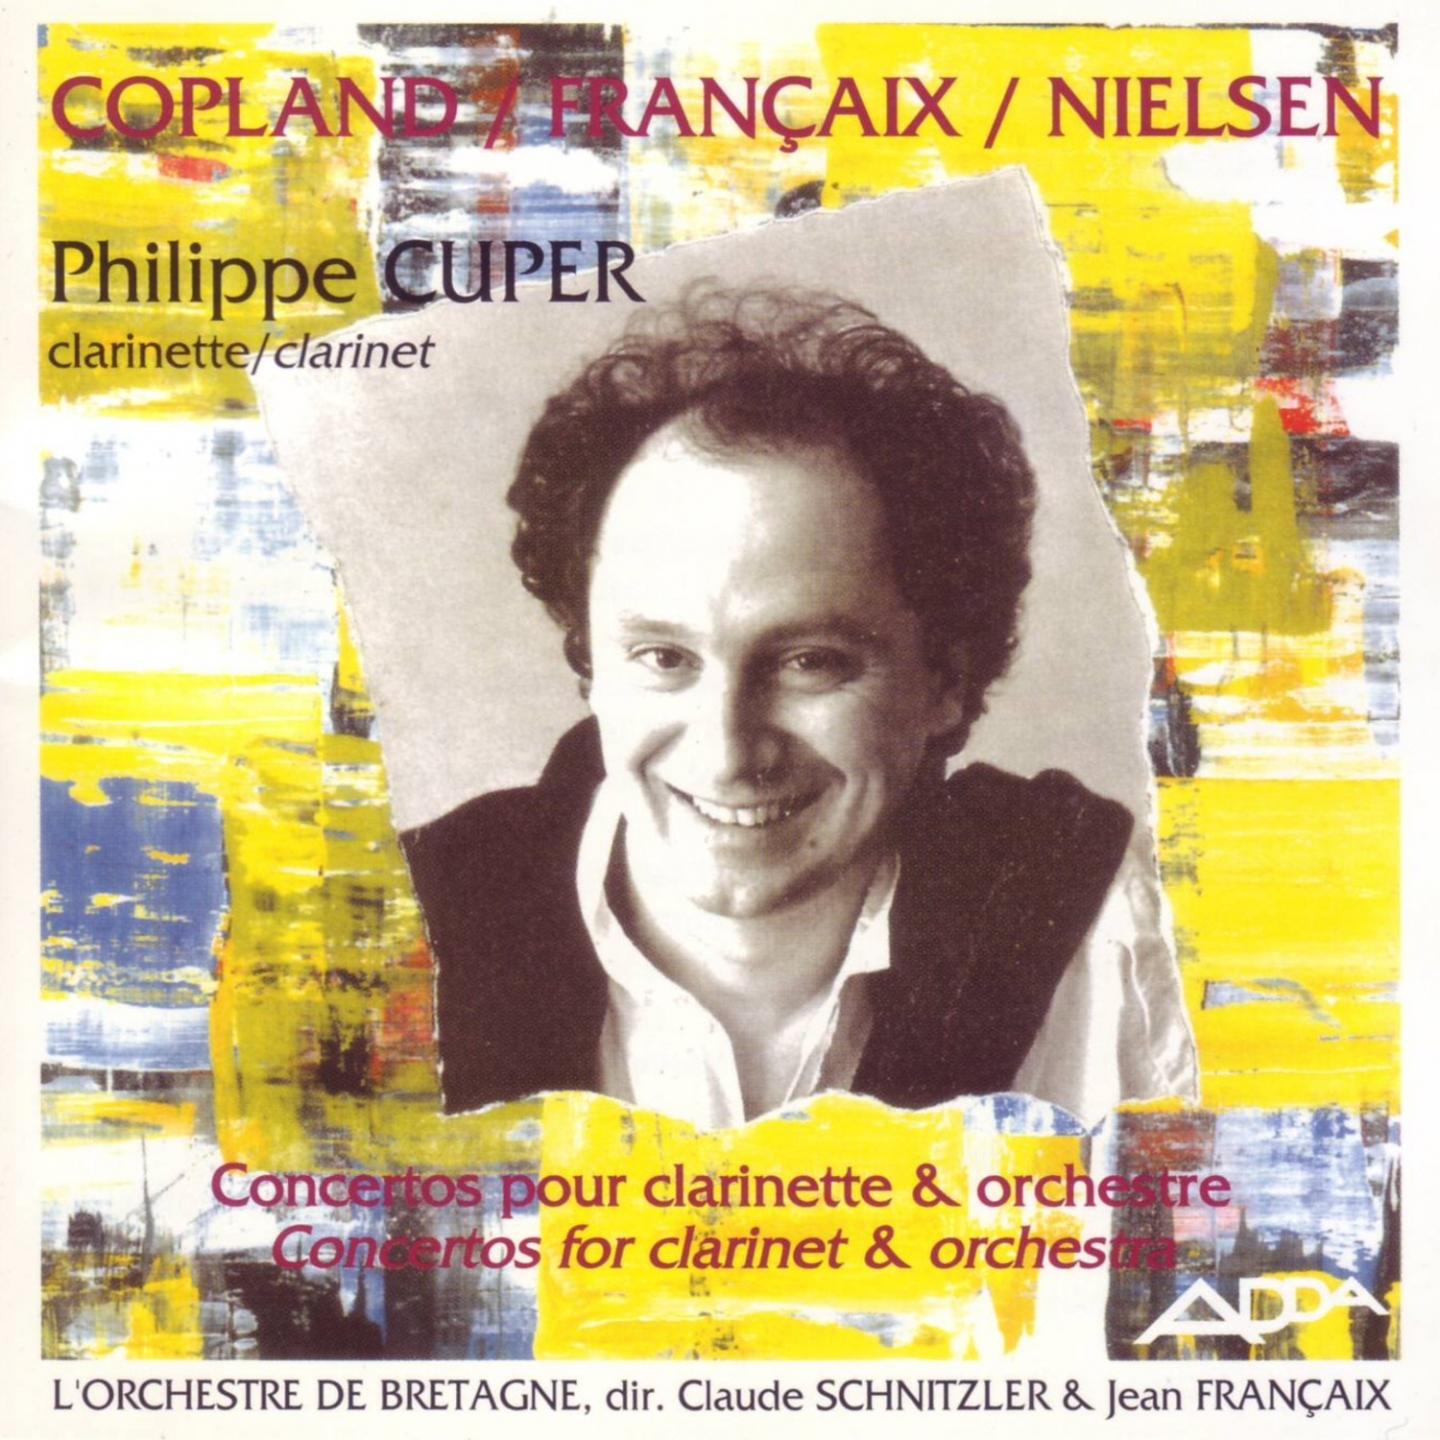 Copland, Francaix, Nielsen : Concertos pour clarinette et orchestre (Great clarinet concertos)